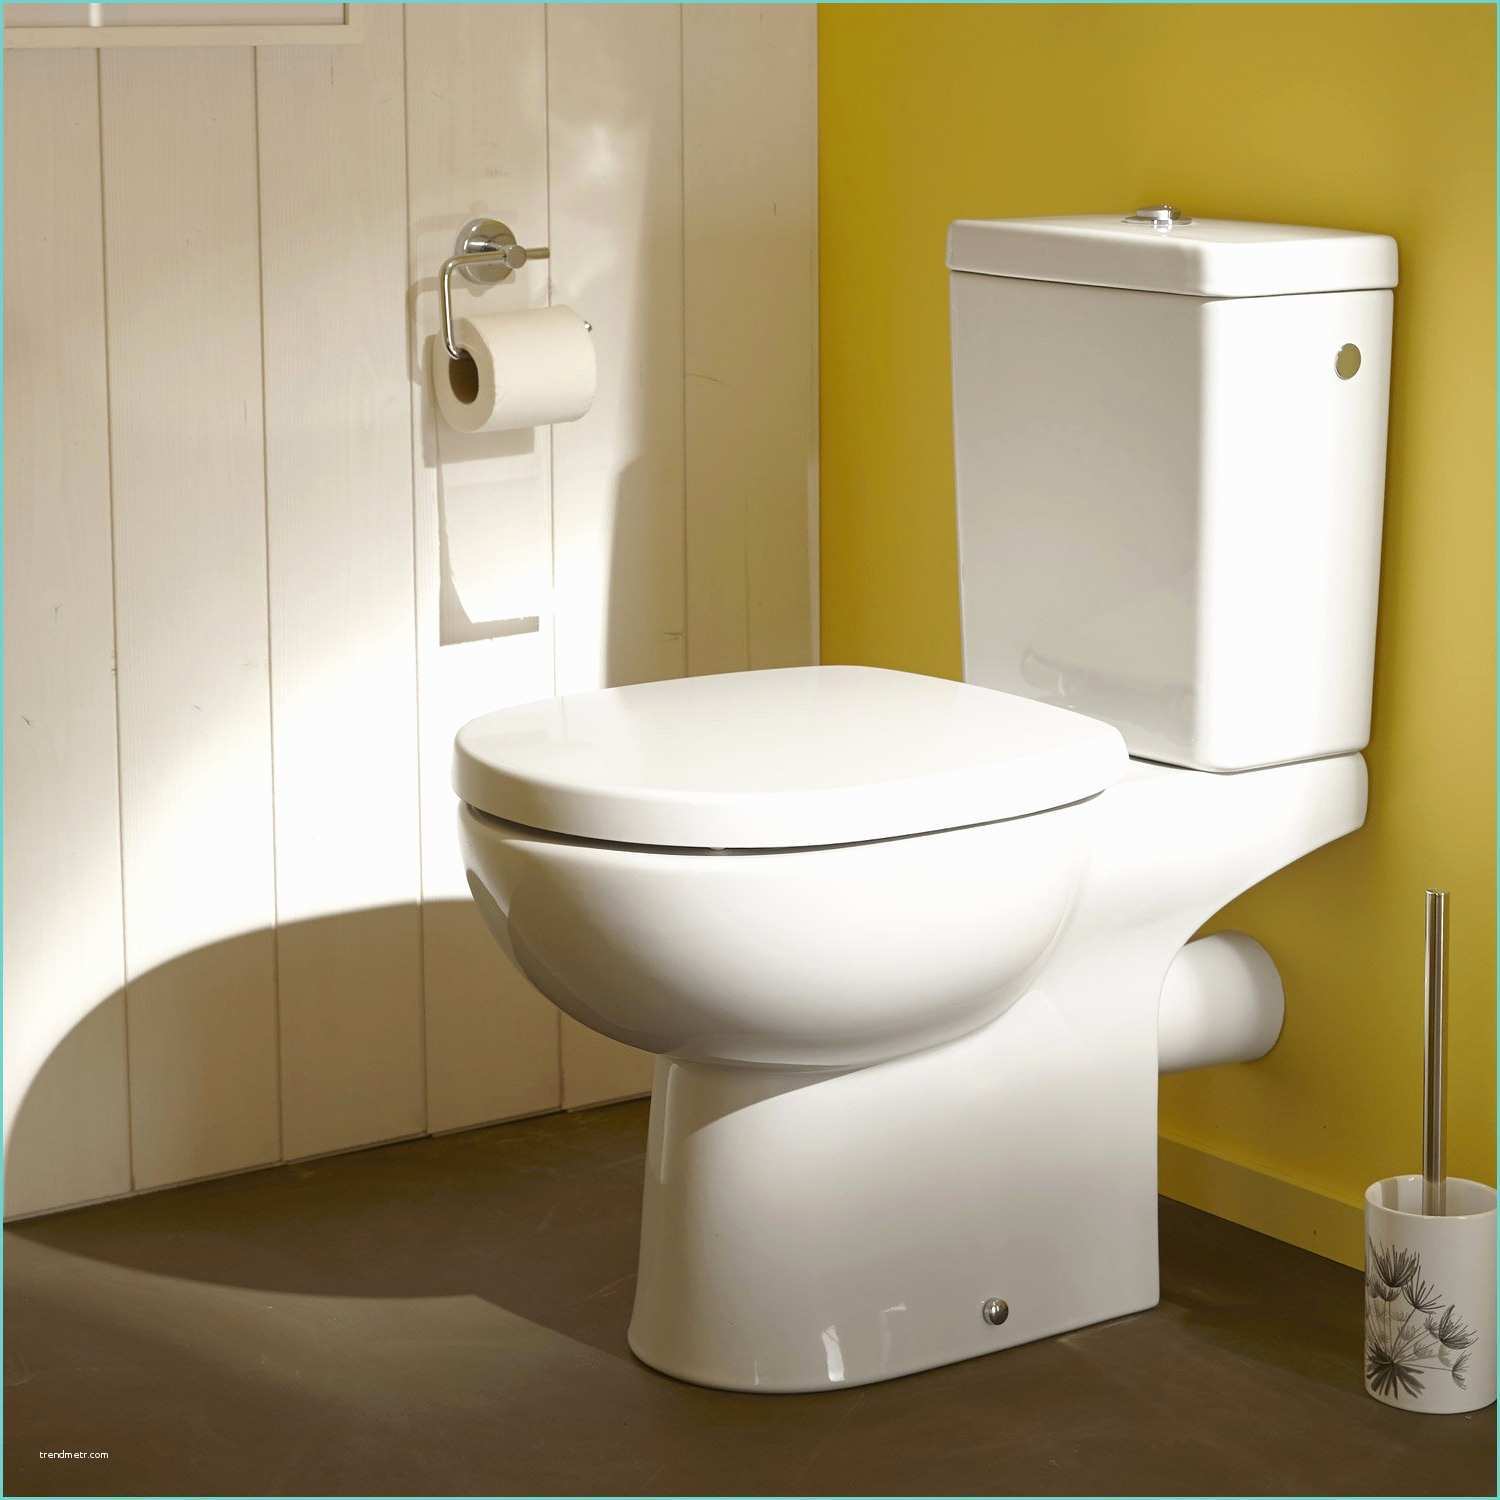 Tarif Pose Wc Suspendu Installer Wc Suspendu Evacuation sol Interesting toilette